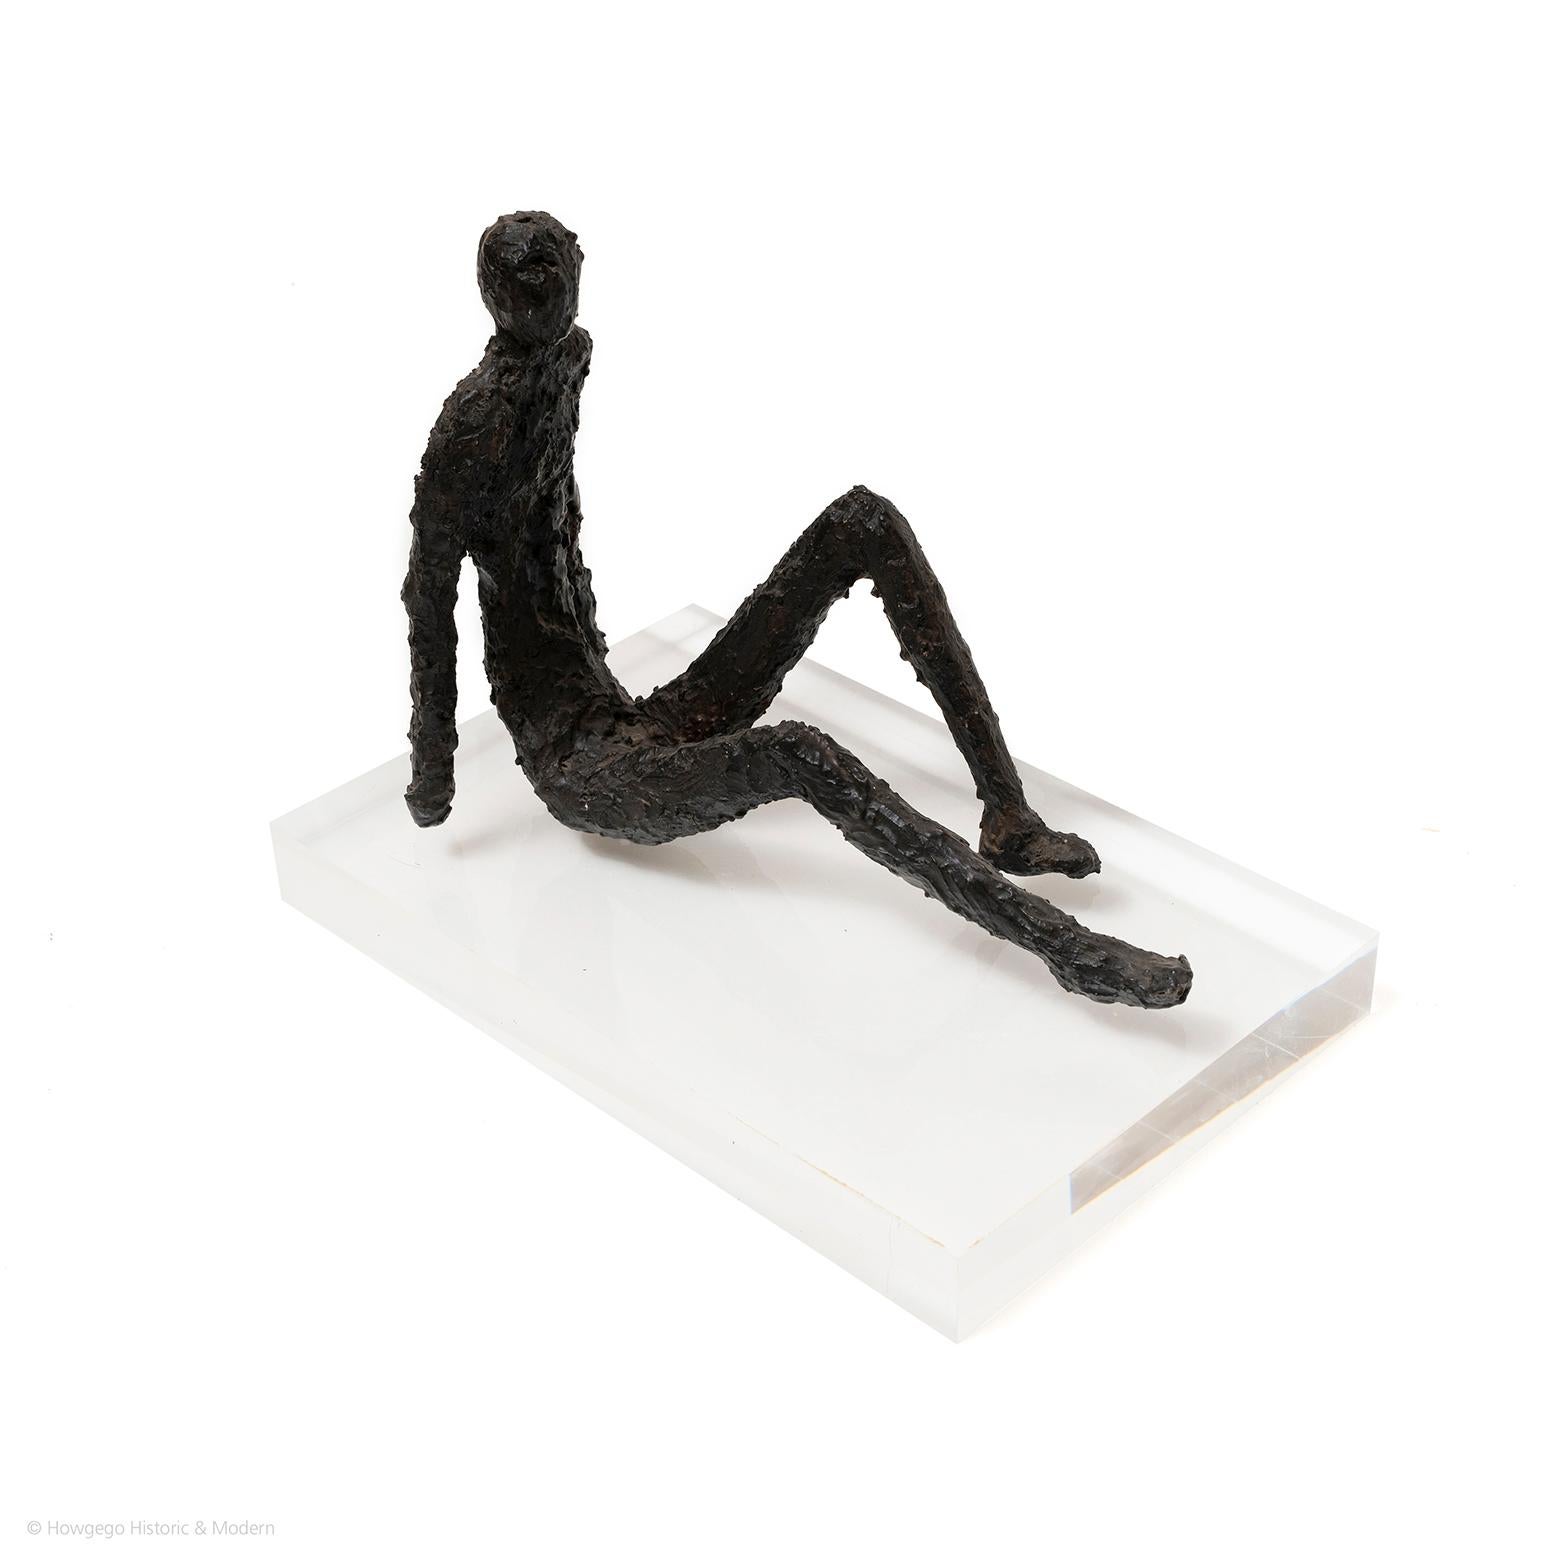 italian sculptor giacometti